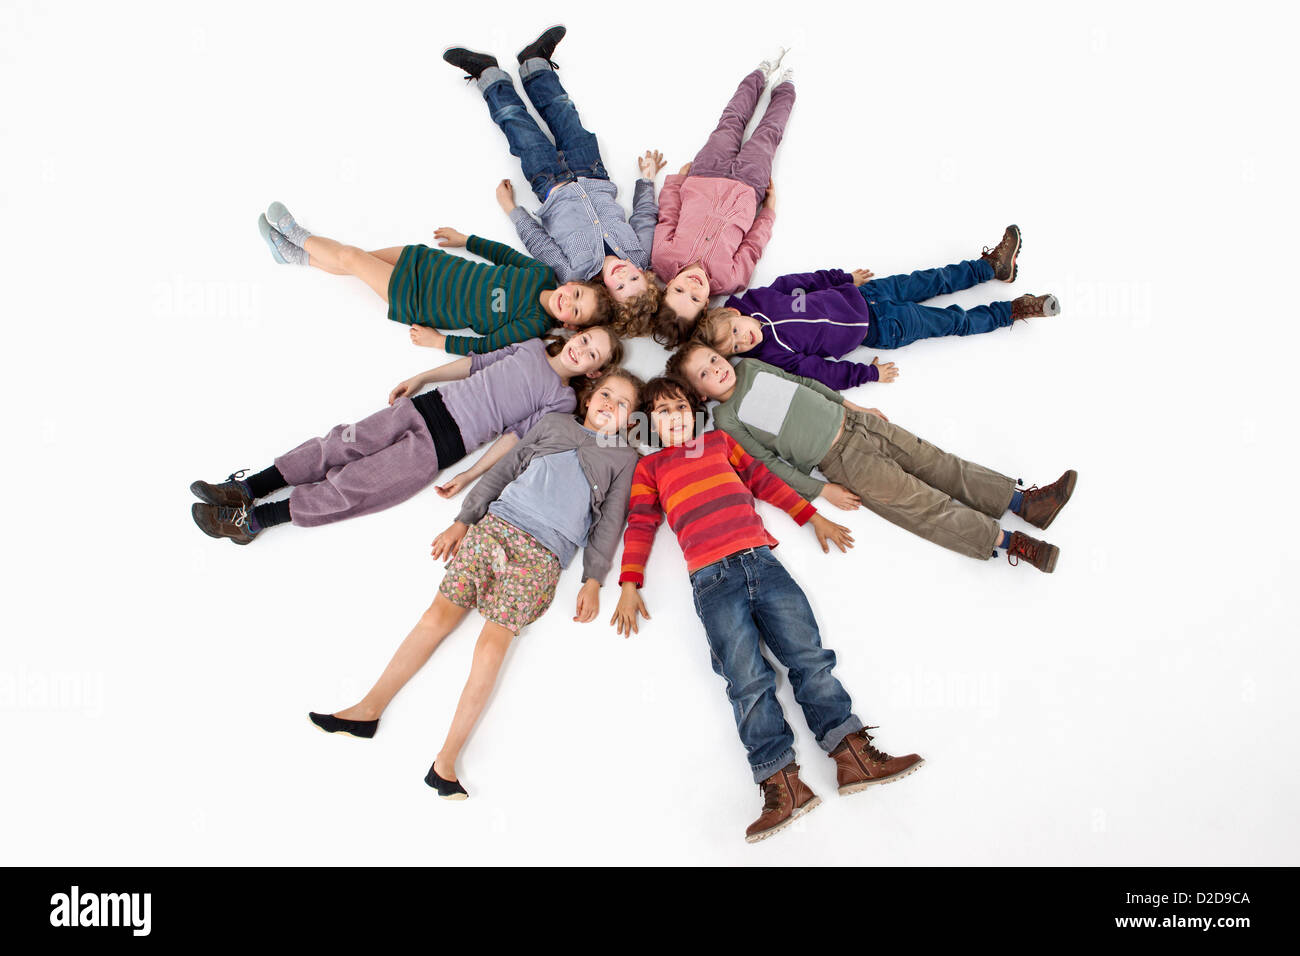 Un groupe d'enfants couchés sur le dos dans un cercle Banque D'Images